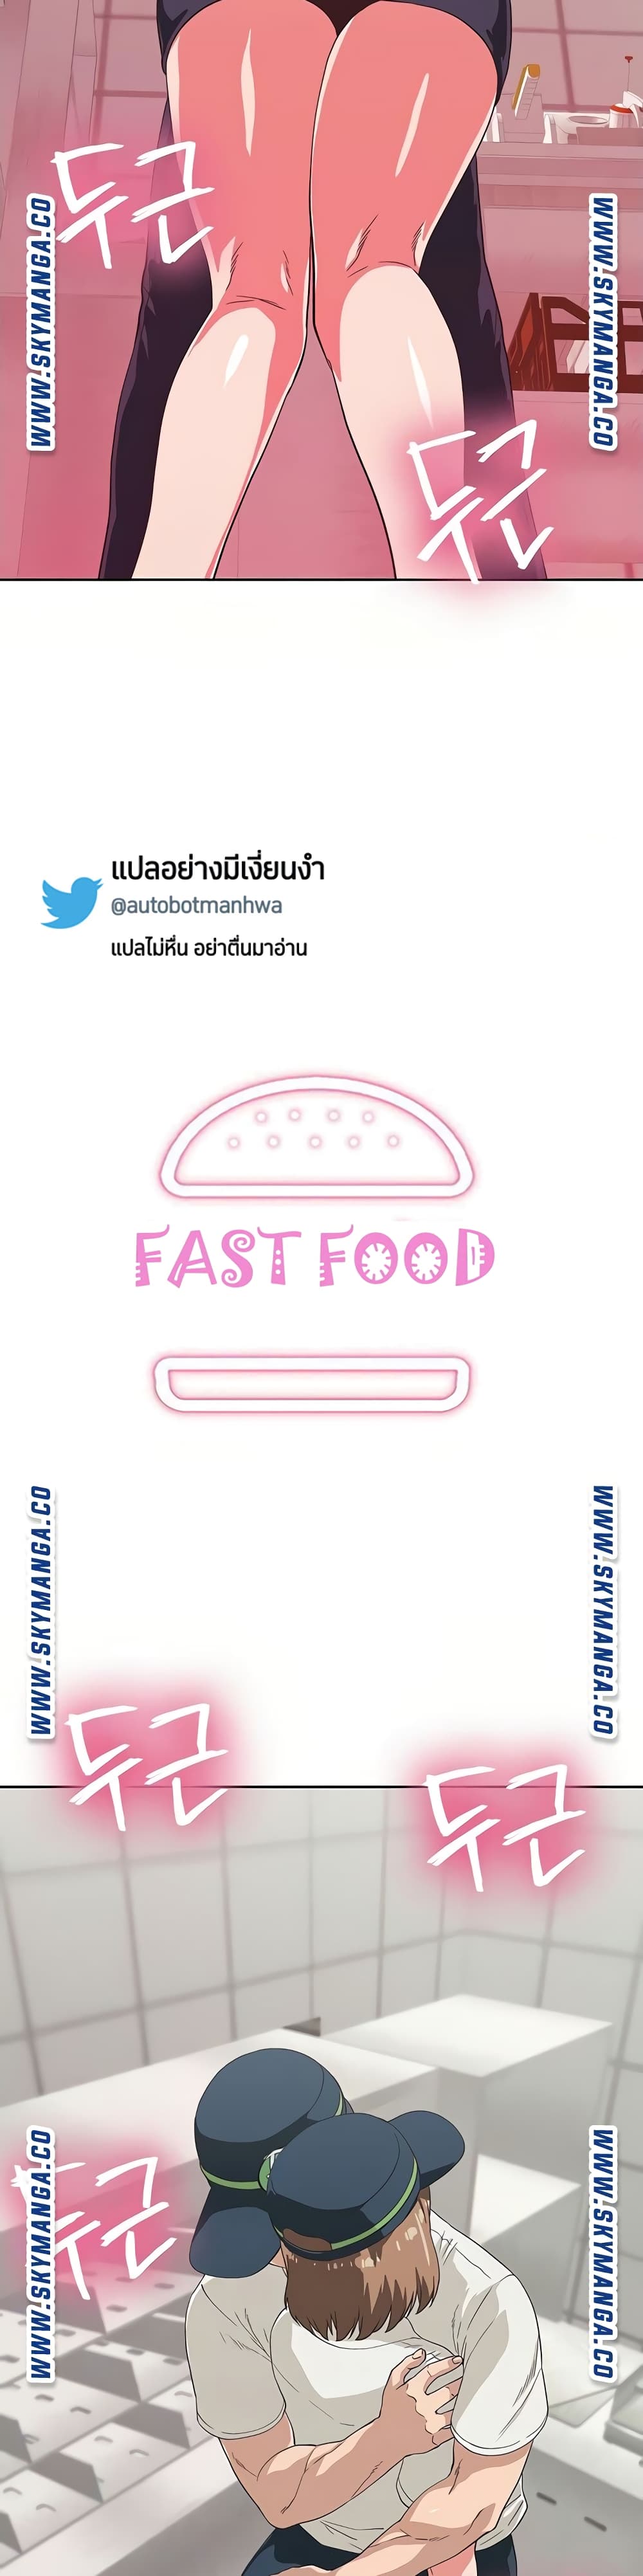 Fast Food 10 (3)